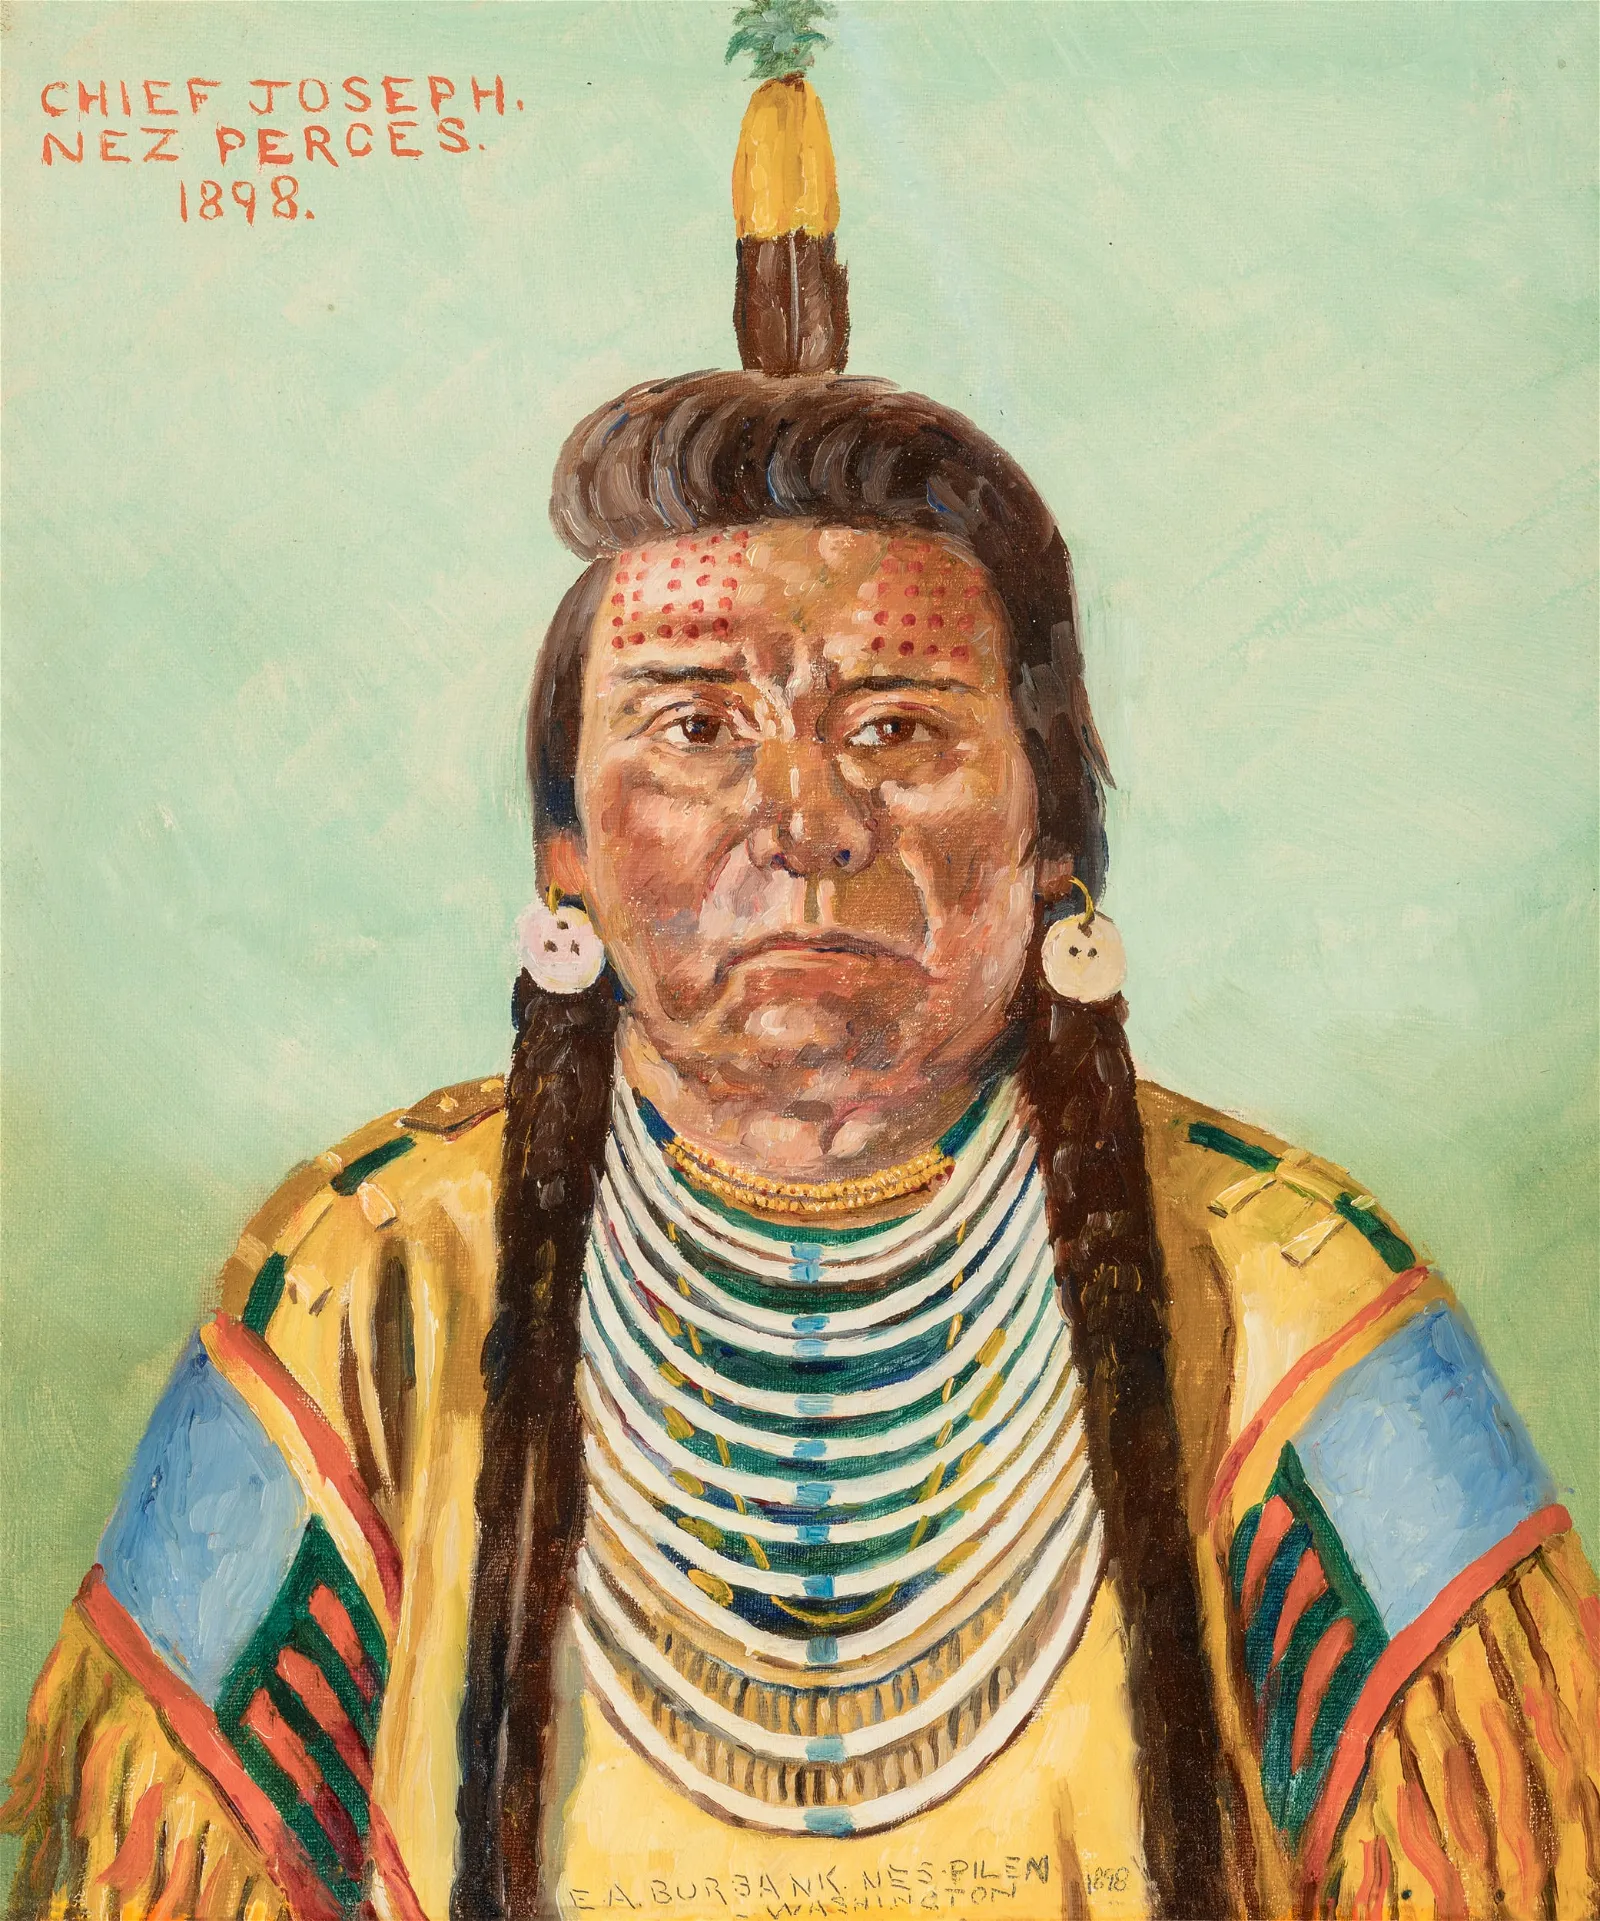 Elbridge Ayer Burbank – Chief Joseph, Nez Perces